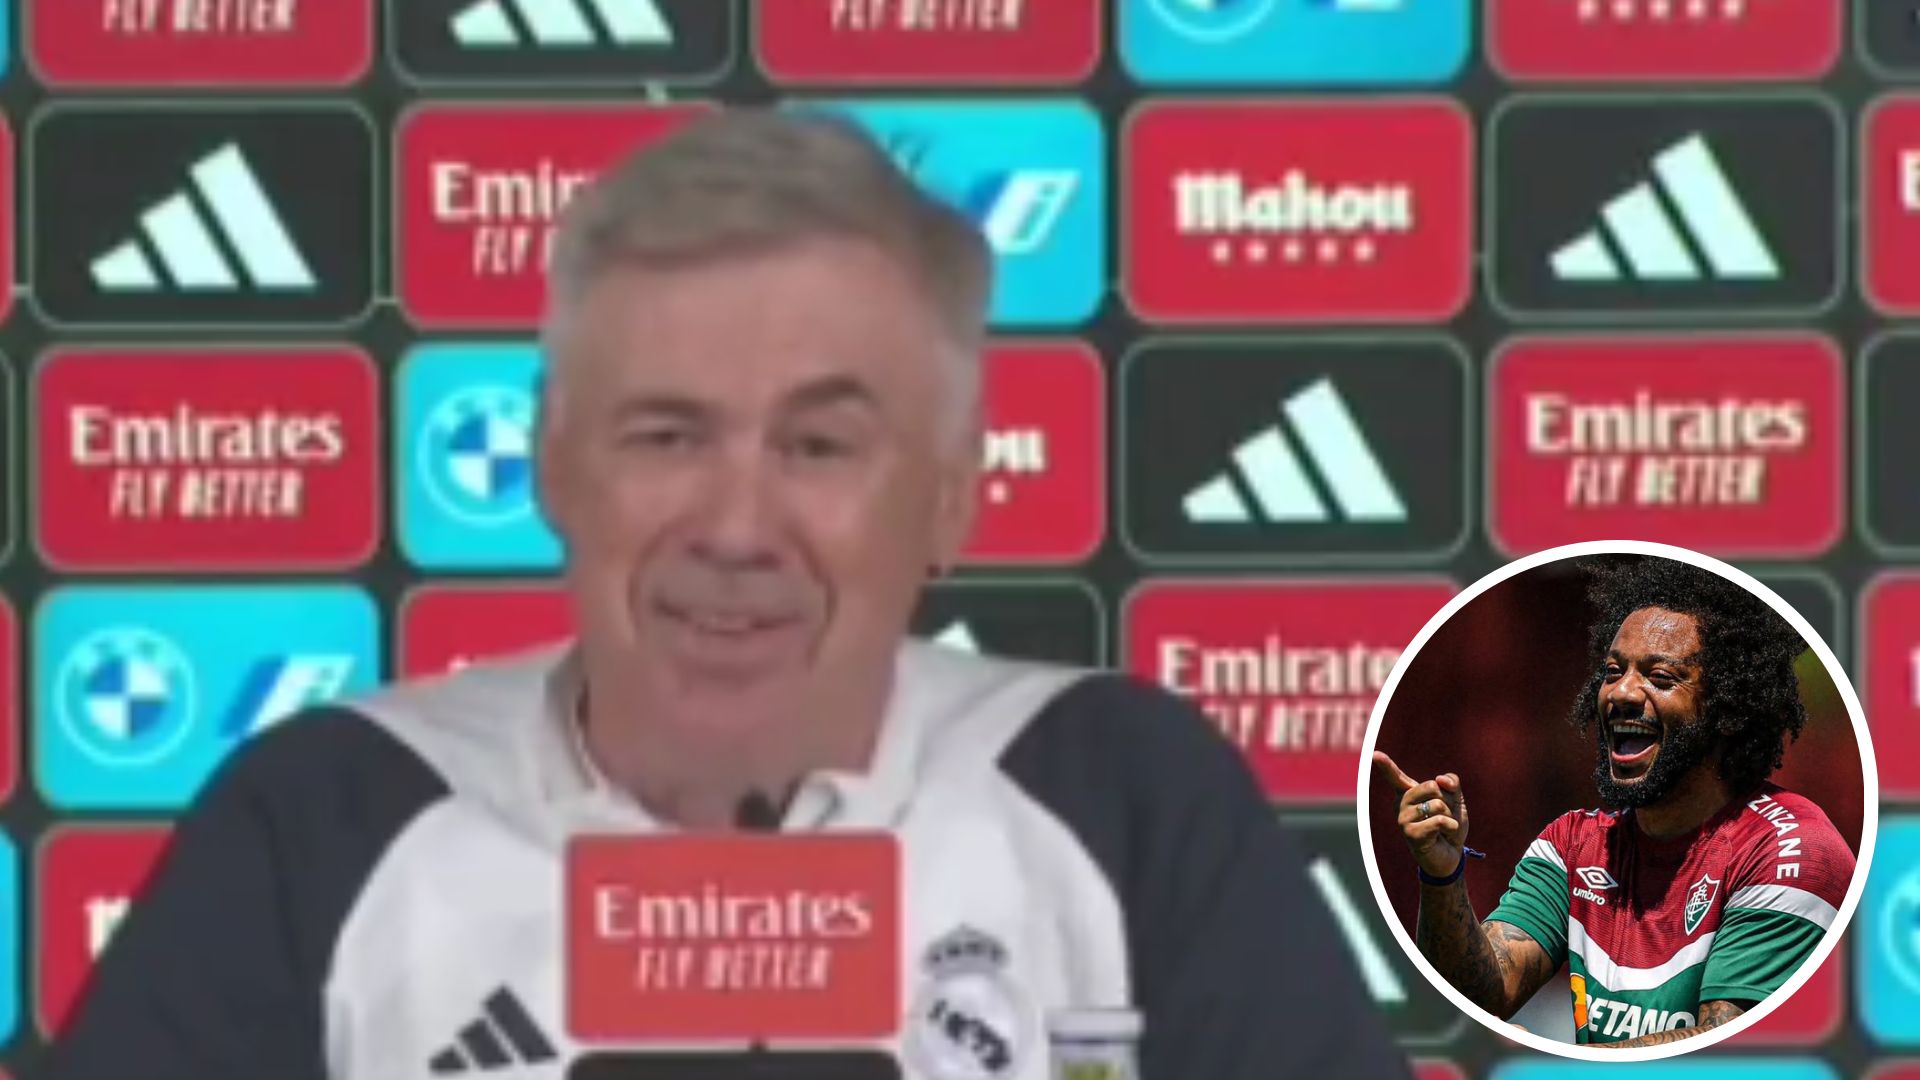 El entrenador del Real Madrid, Carlo Ancelotti, ganó la décima y la decimocuarta con Marcelo. (Foto Prensa Libre: Captura de Pantalla)